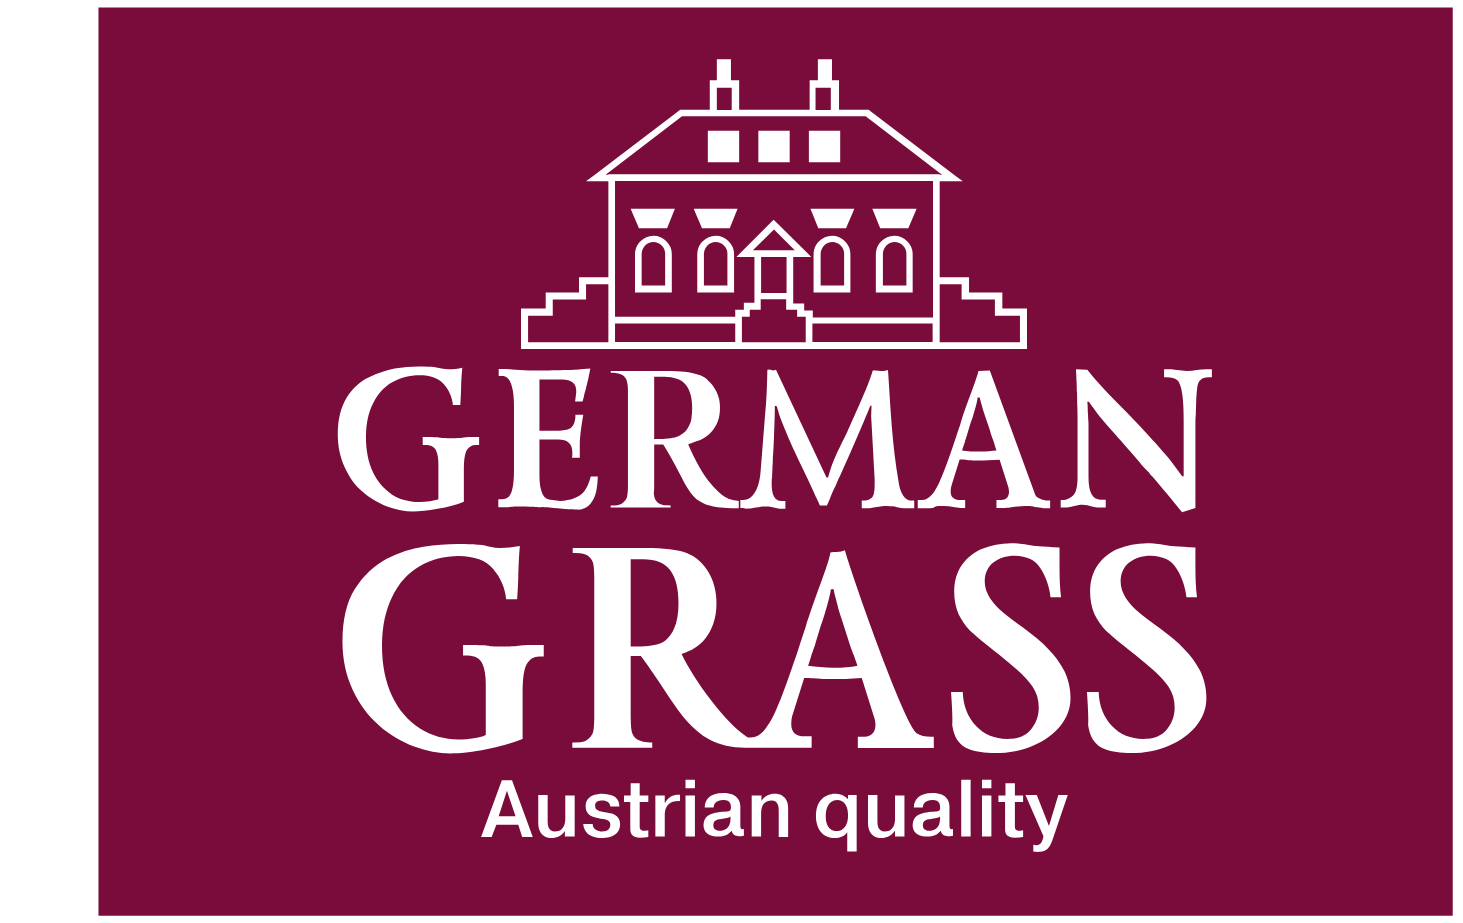 German grass